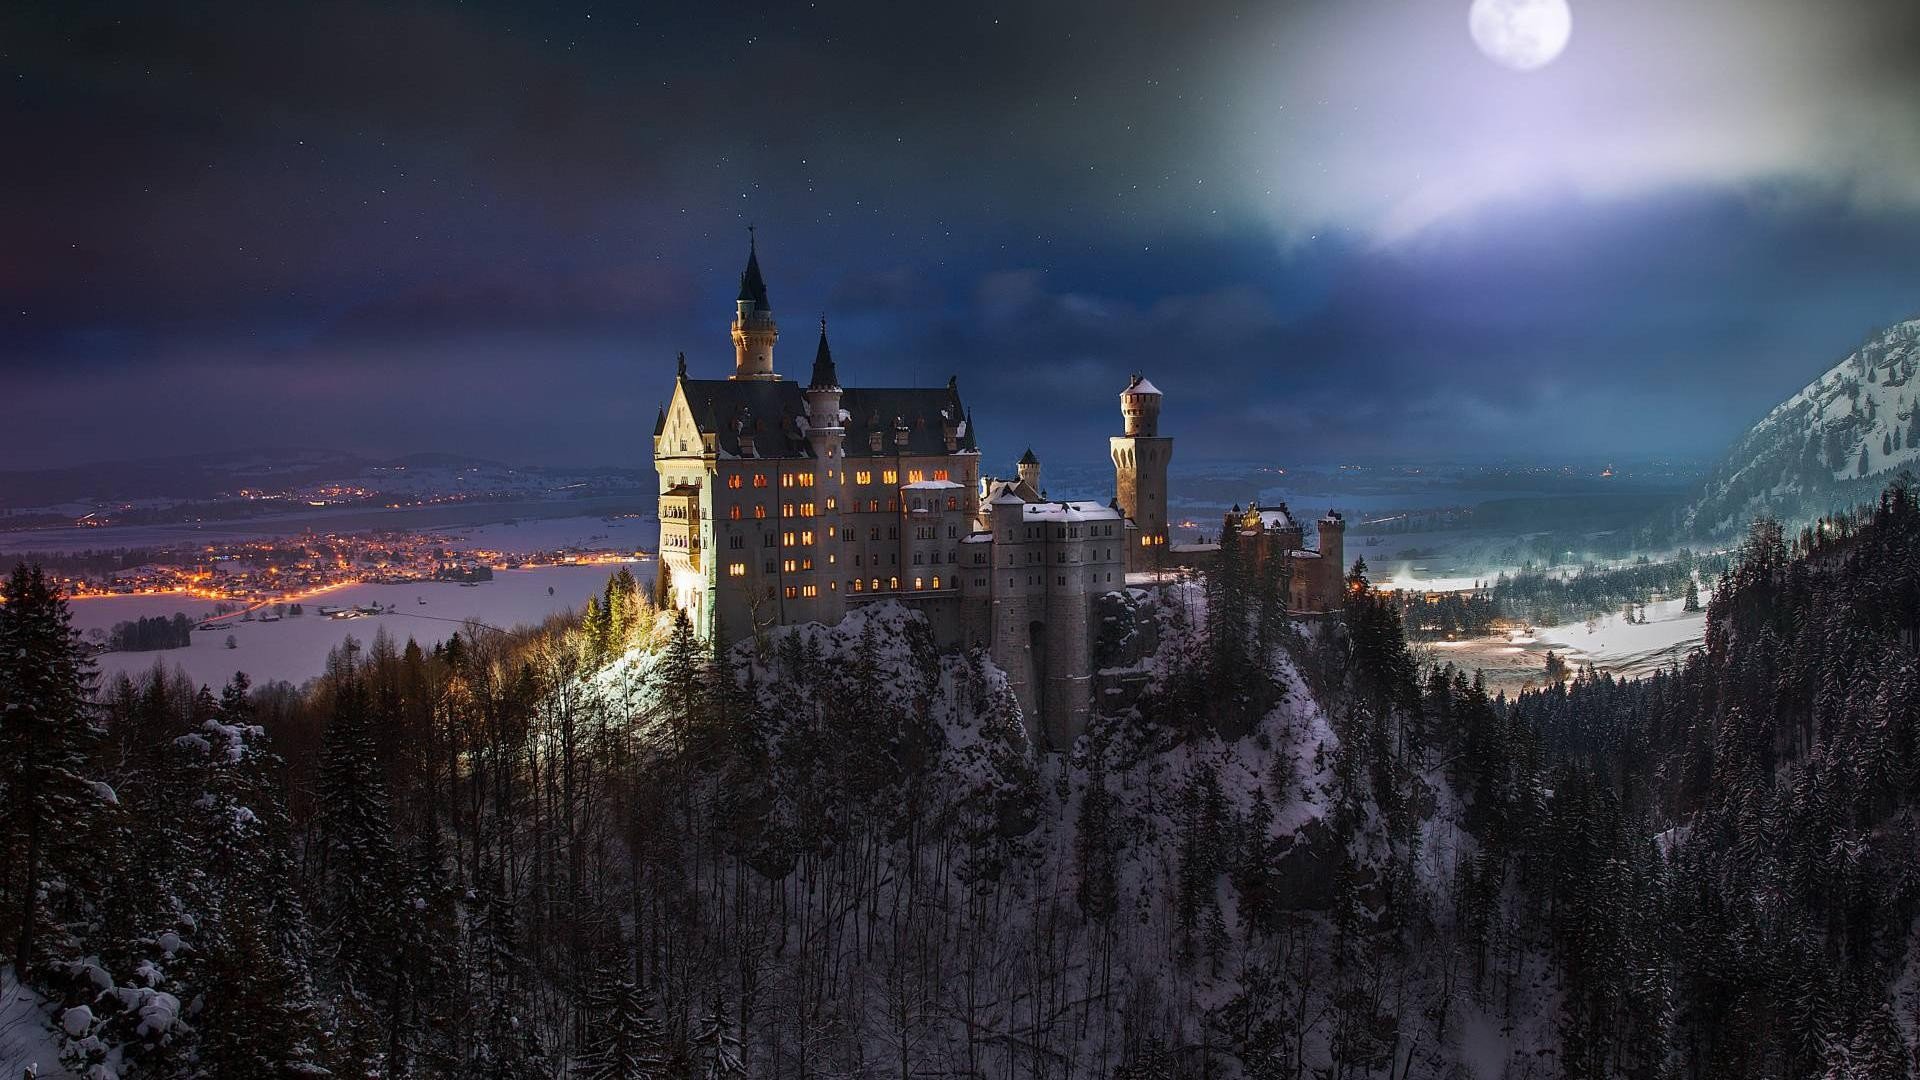 Neuschwanstein Castle, Castle, Germany, Night, Moon, Landscape, Snow, Forest, Trees Wallpaper